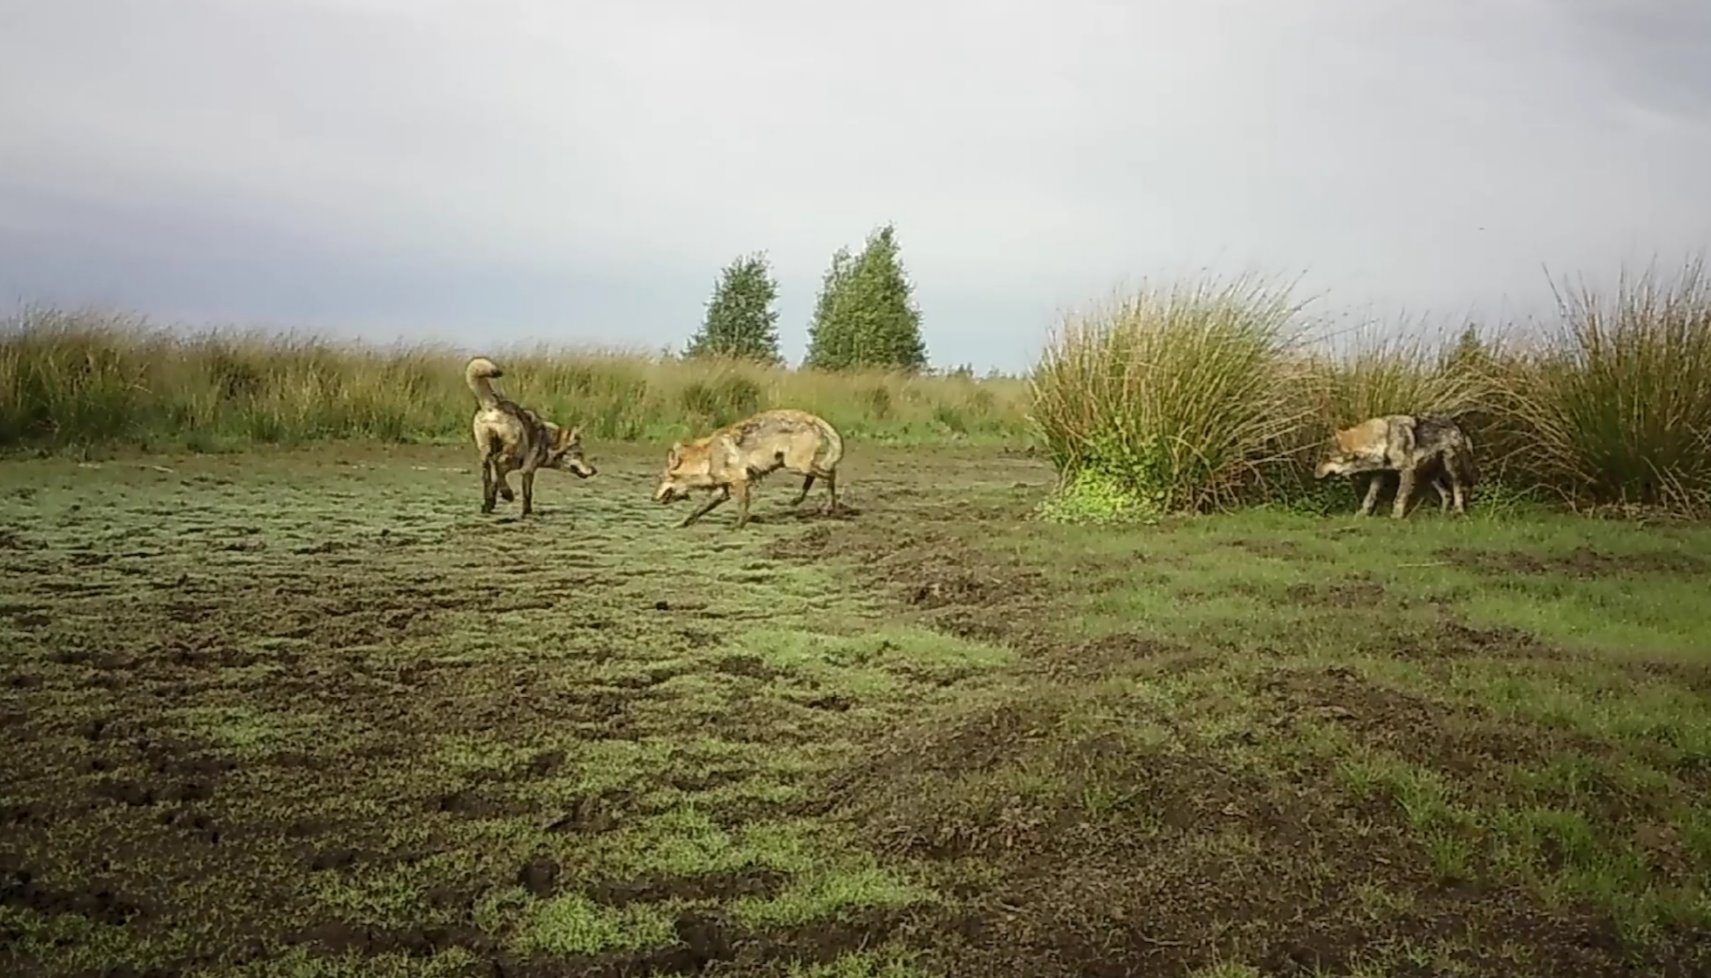 Read Trois jeunes loups filmés en train de jouer dans le Limbourg (vidéo) by Maxime Asselberghs